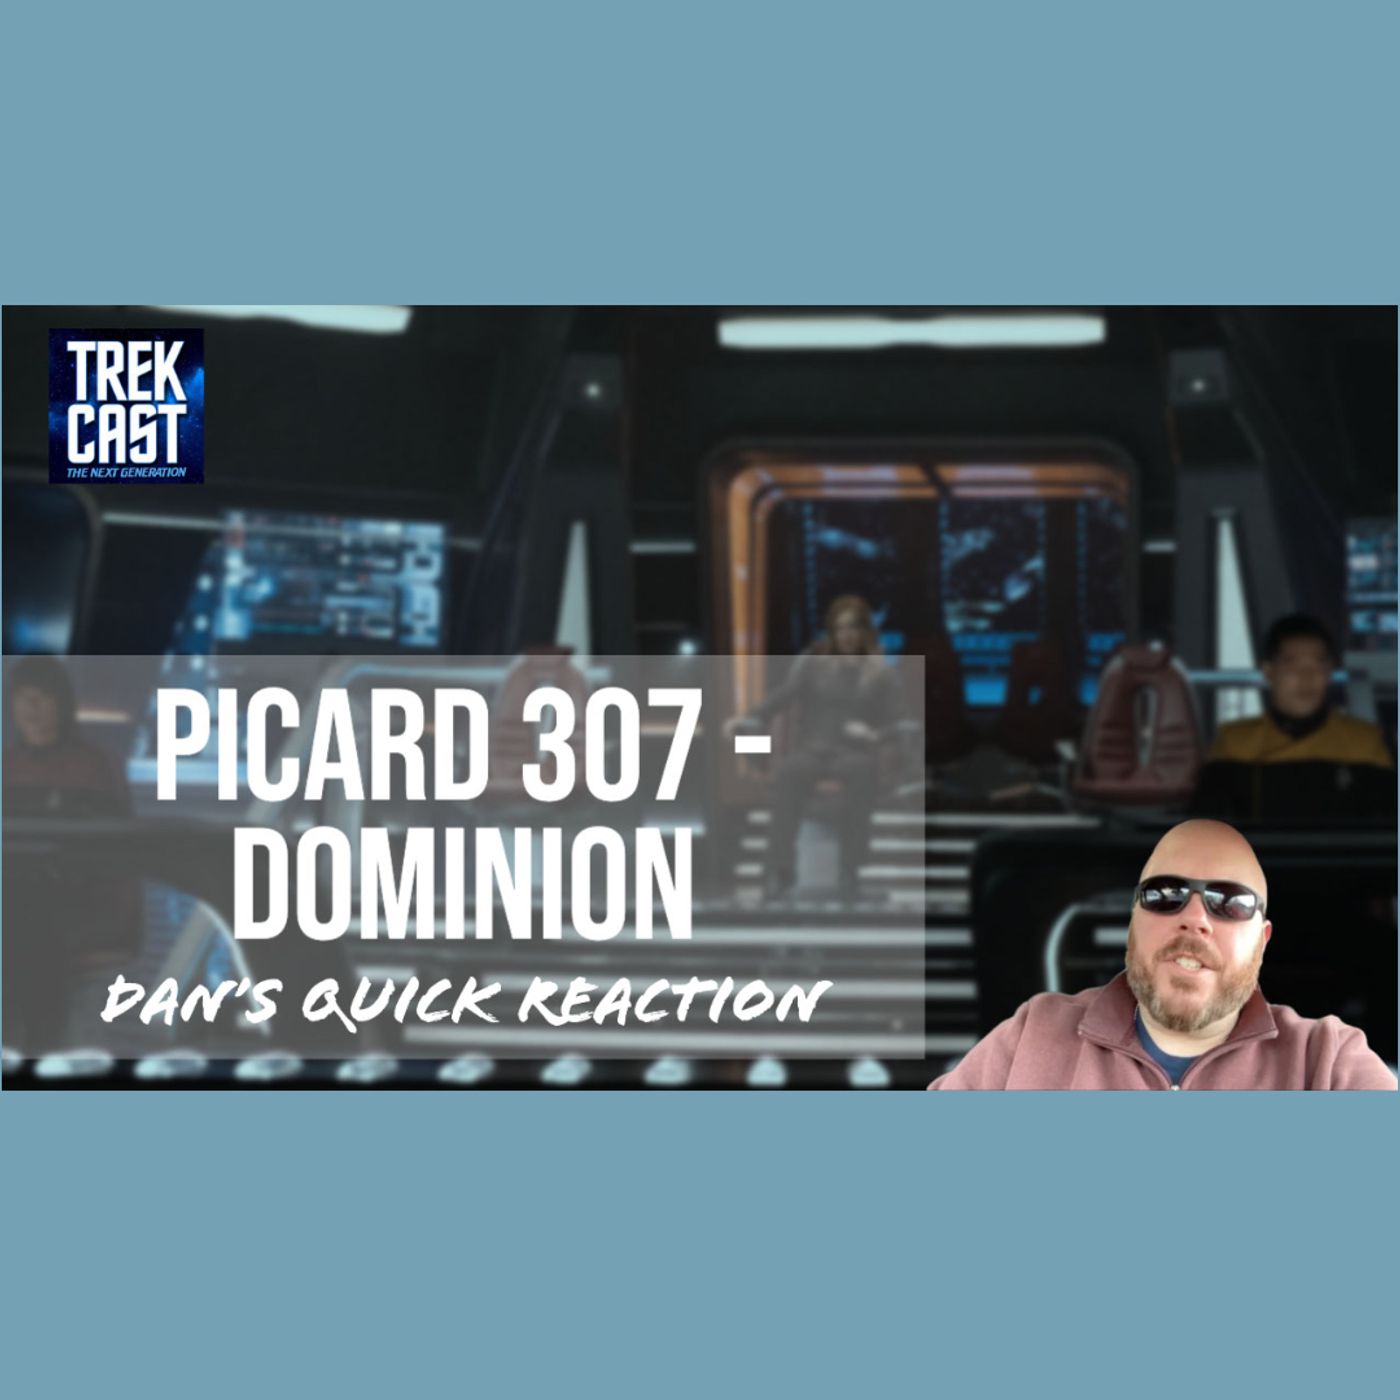 Dan's Picard 307 